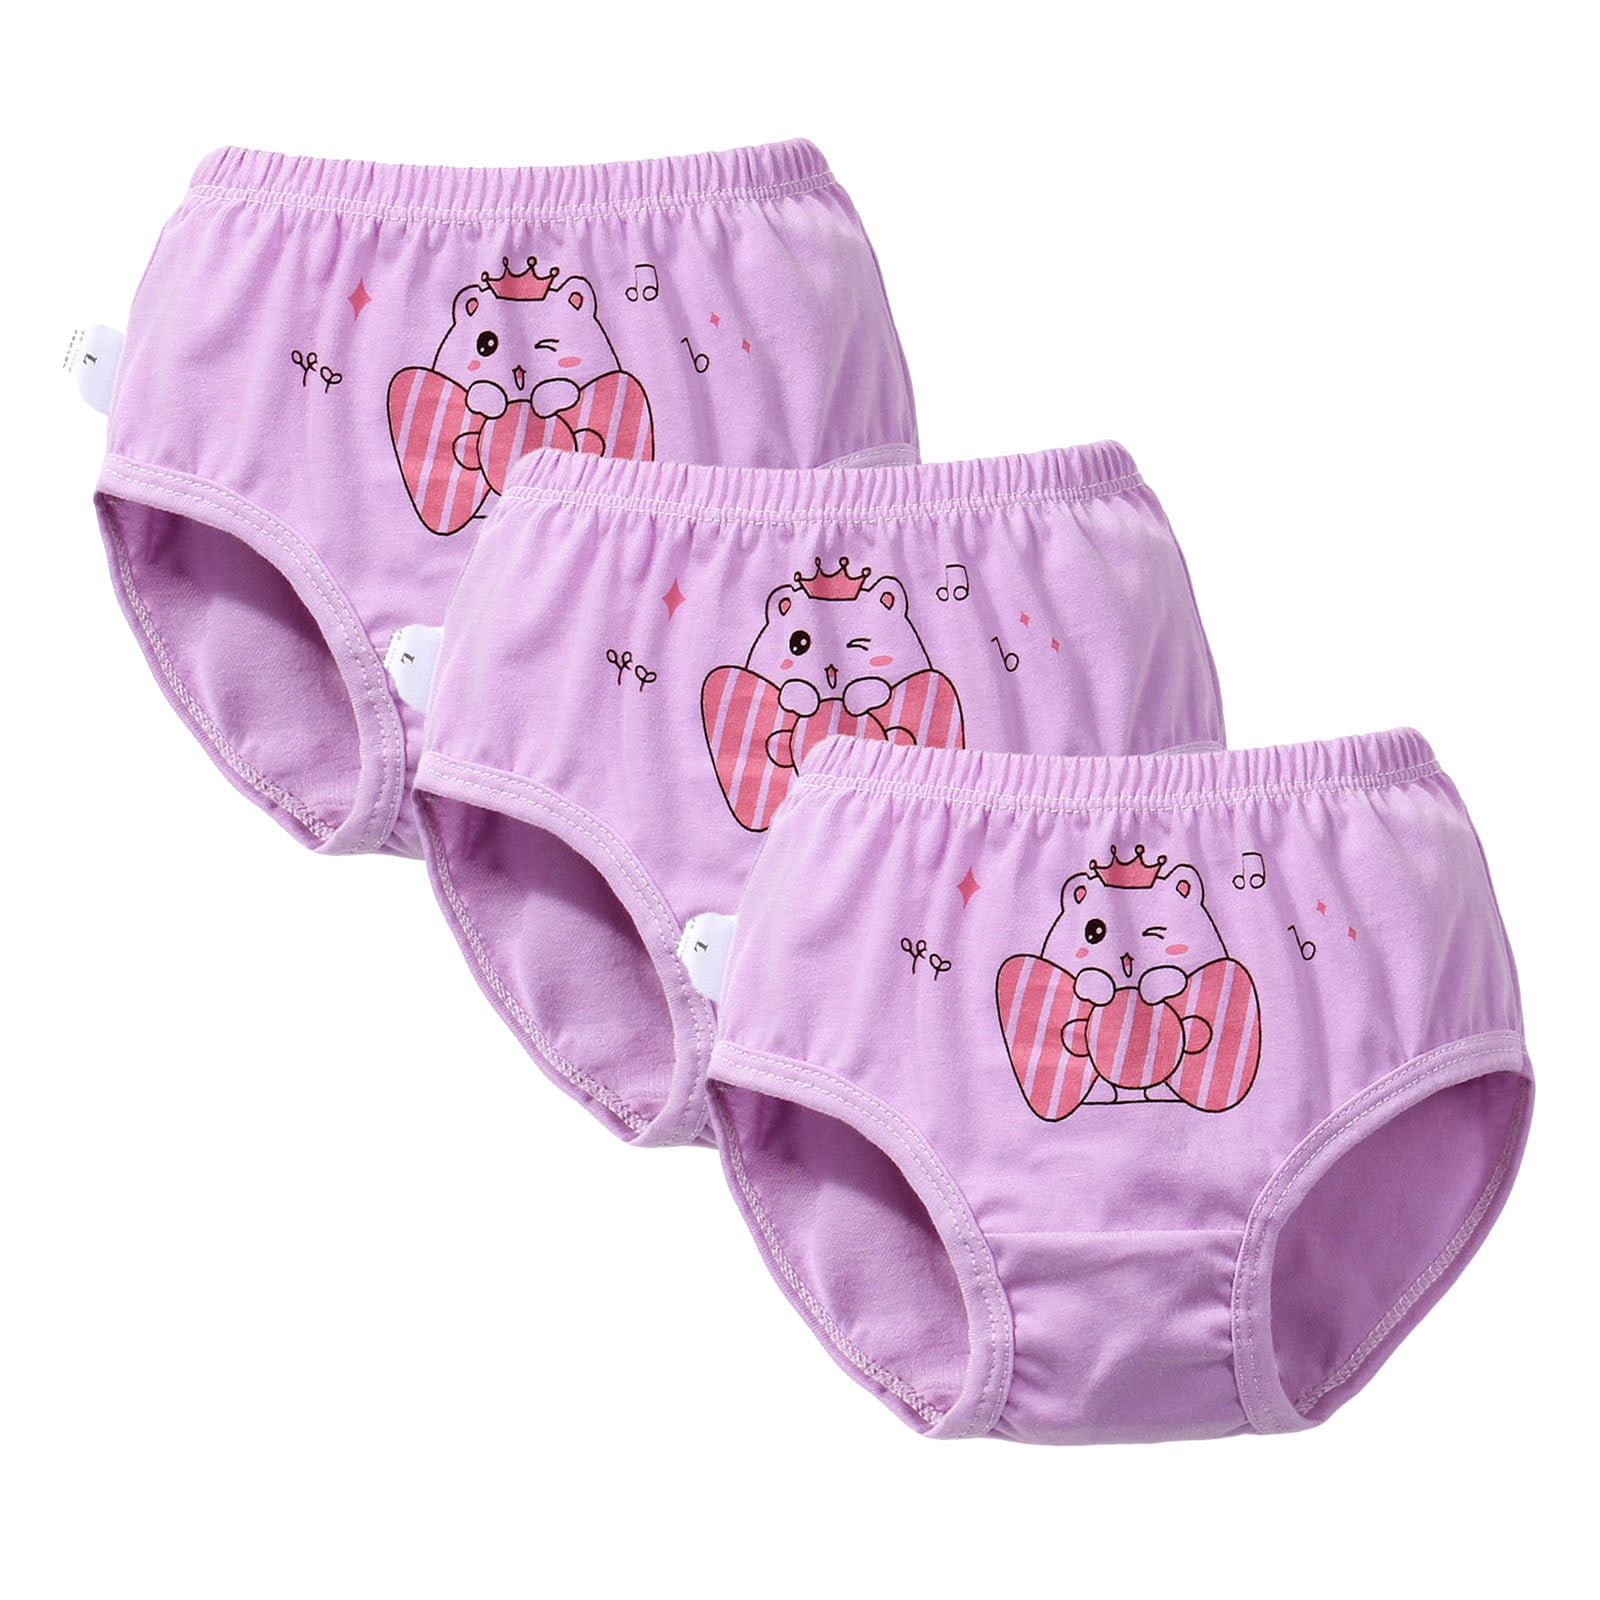 Ketyyh-chn99 Girls Underwear Girls' Soft Brief Underwear Pink,140 